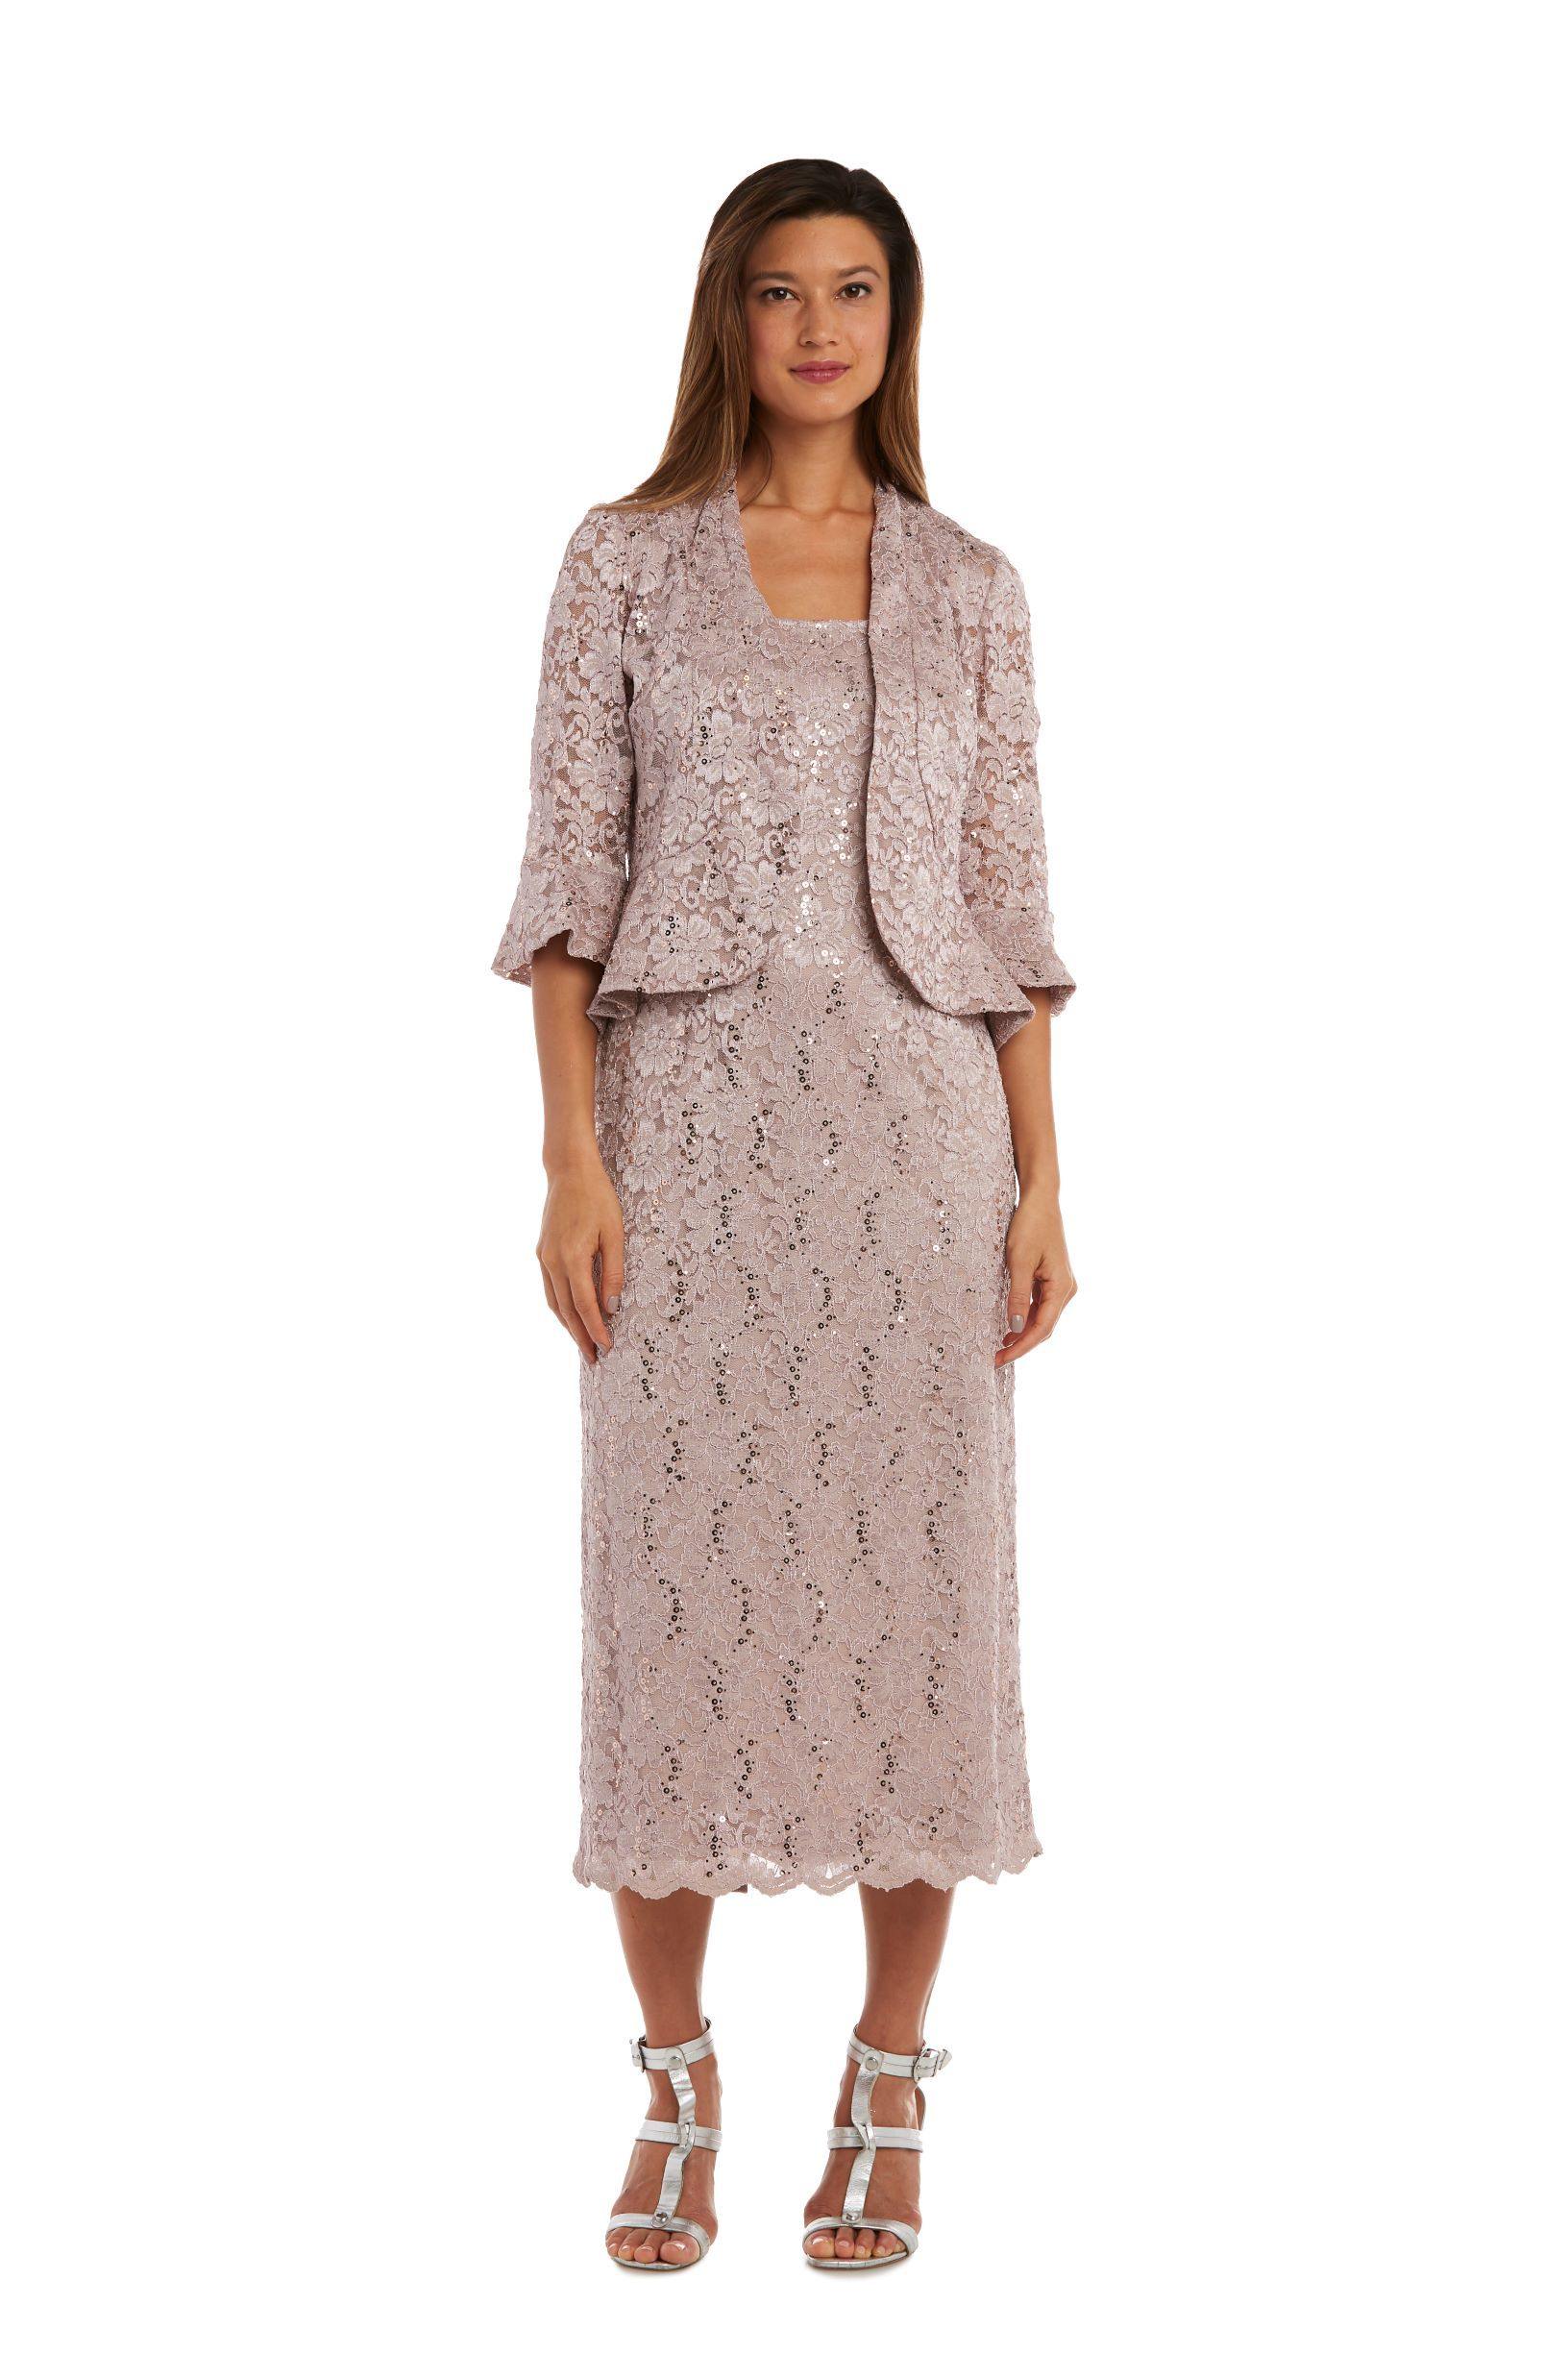 R&M Richards Long Formal Petite Lace Dress 9896P - The Dress Outlet